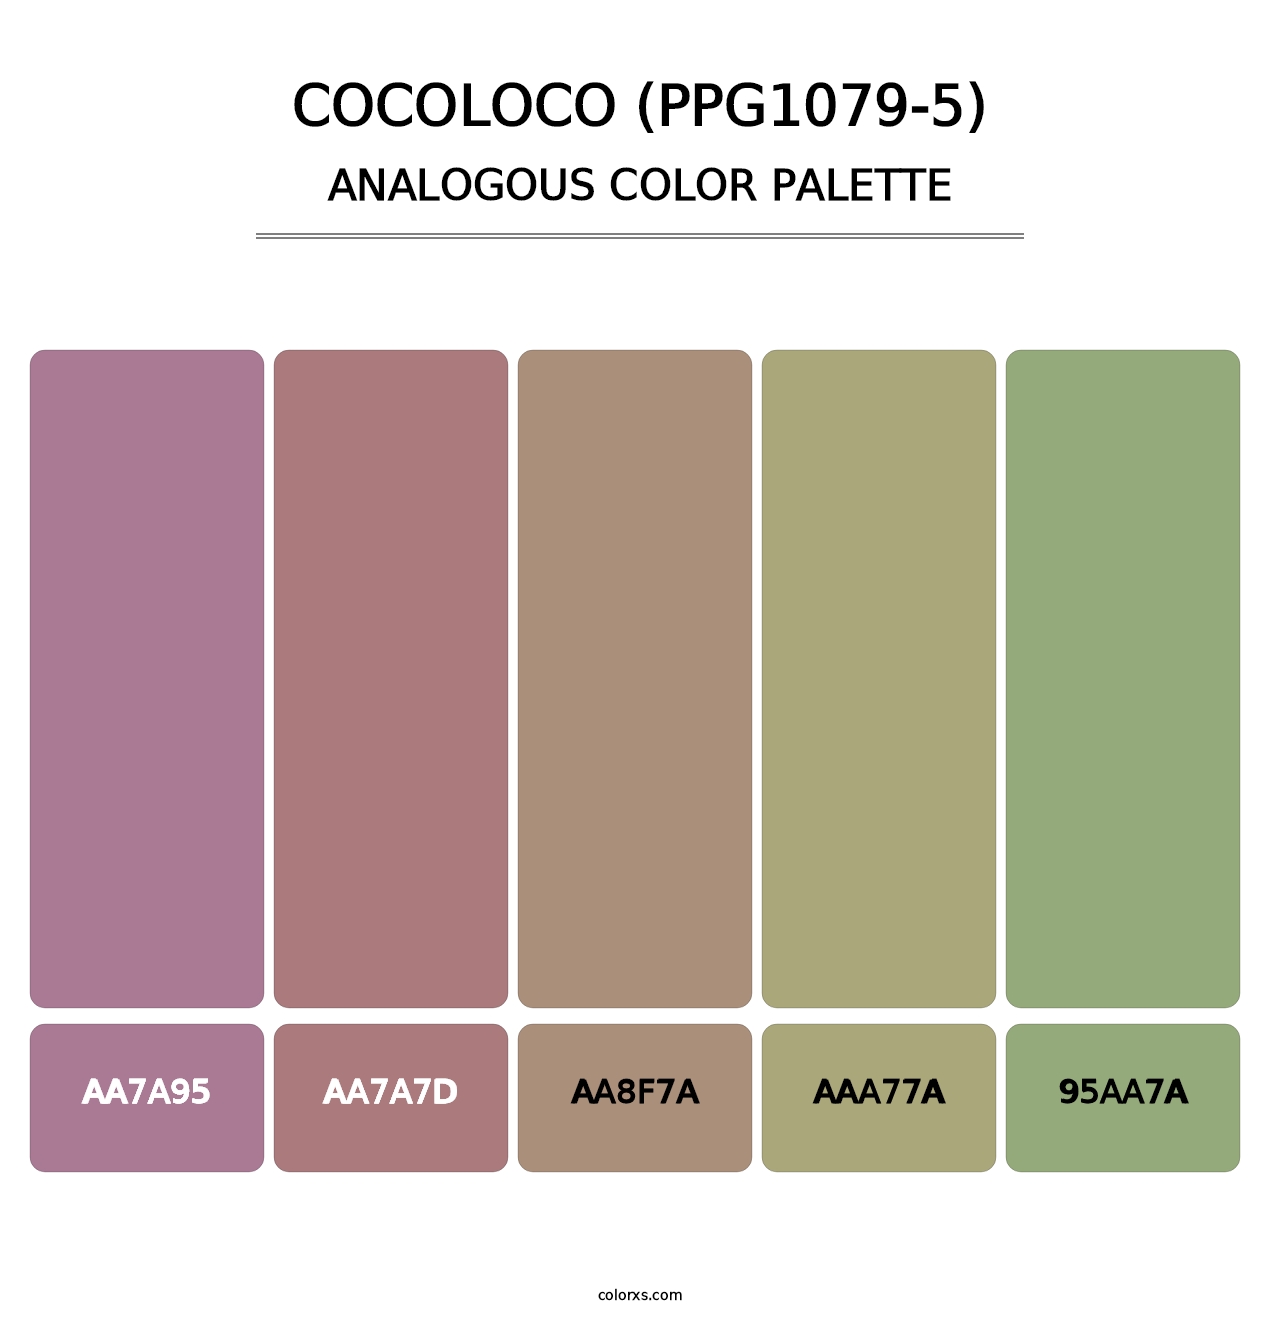 Cocoloco (PPG1079-5) - Analogous Color Palette